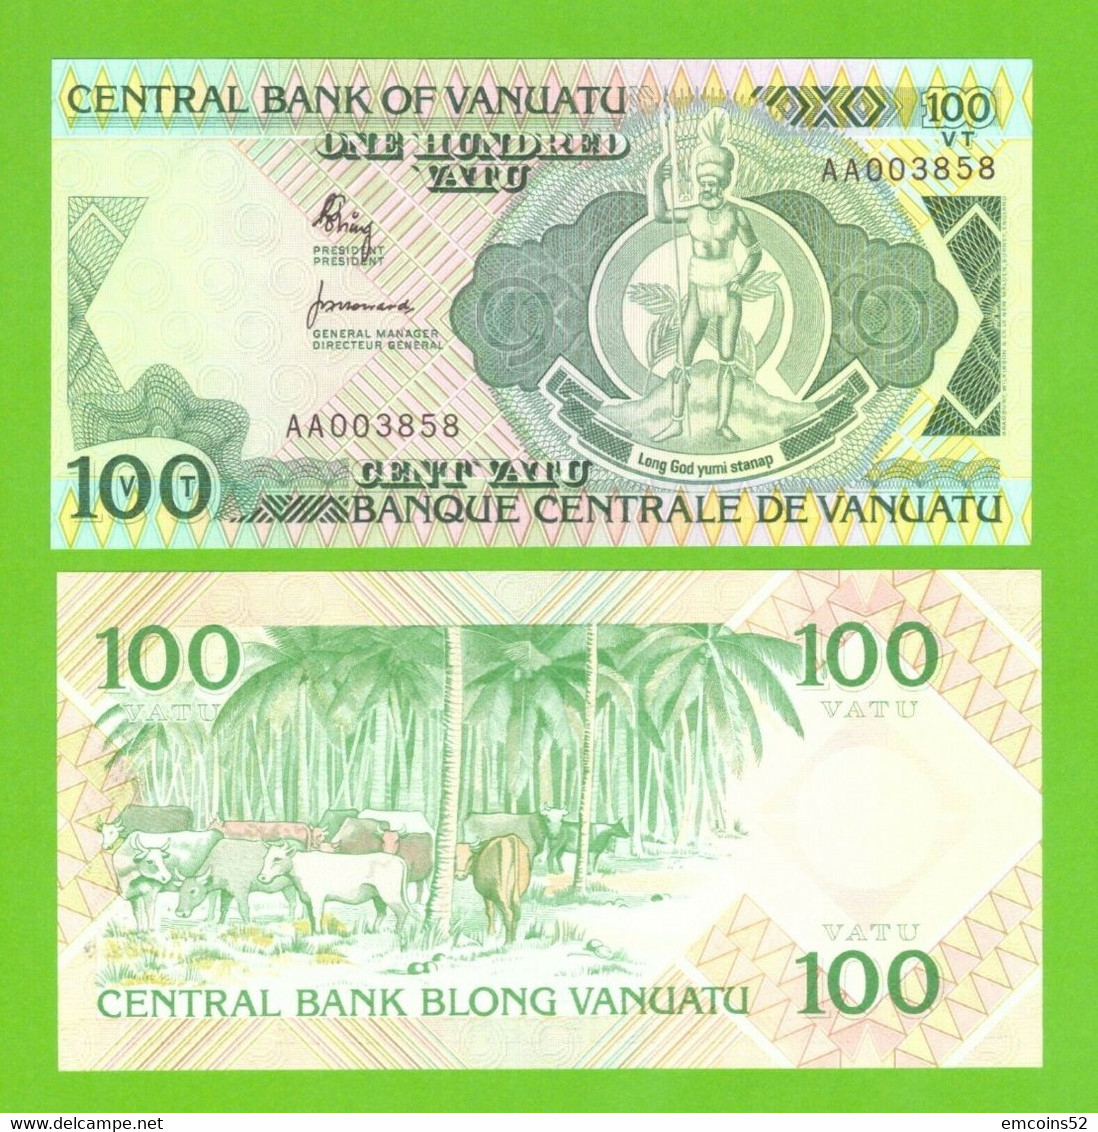 VANUATU 100 VATU 1982  P-1  UNC - Vanuatu